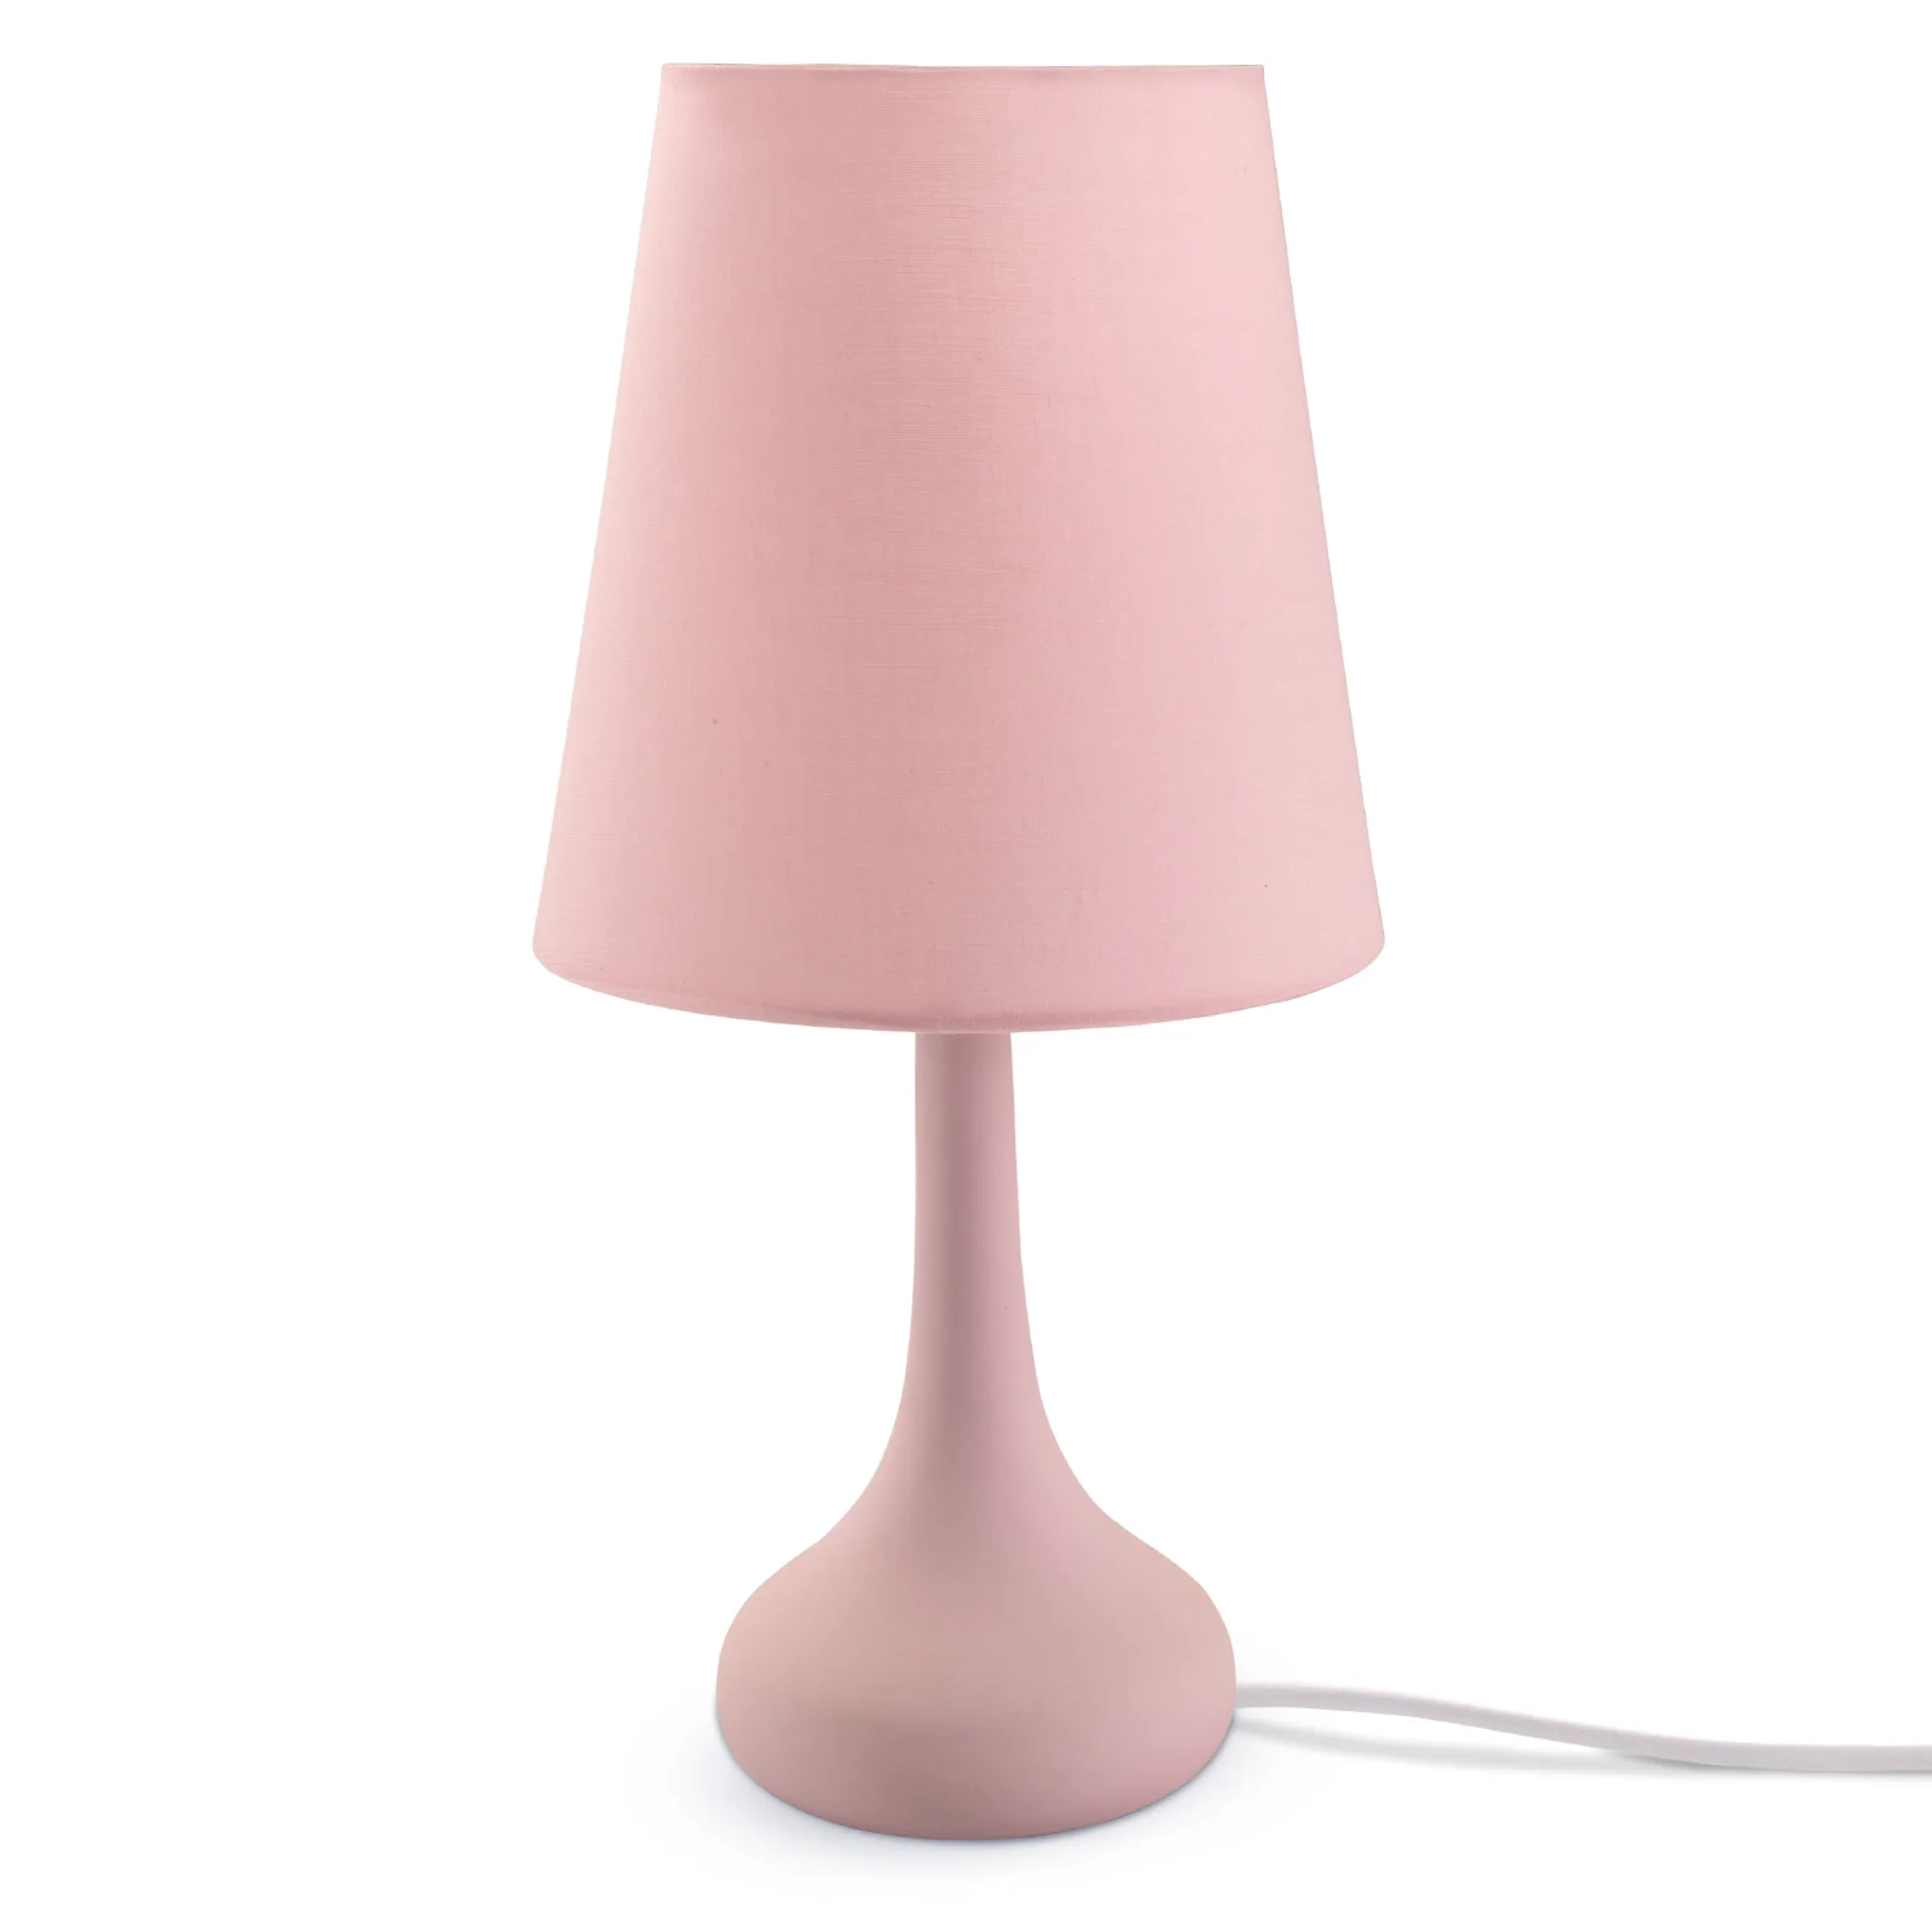 Tischlampe E14 Lampe, Tischleuchte Für Rosa Farbe Kinderzimmer Modern Wohnzimmer u